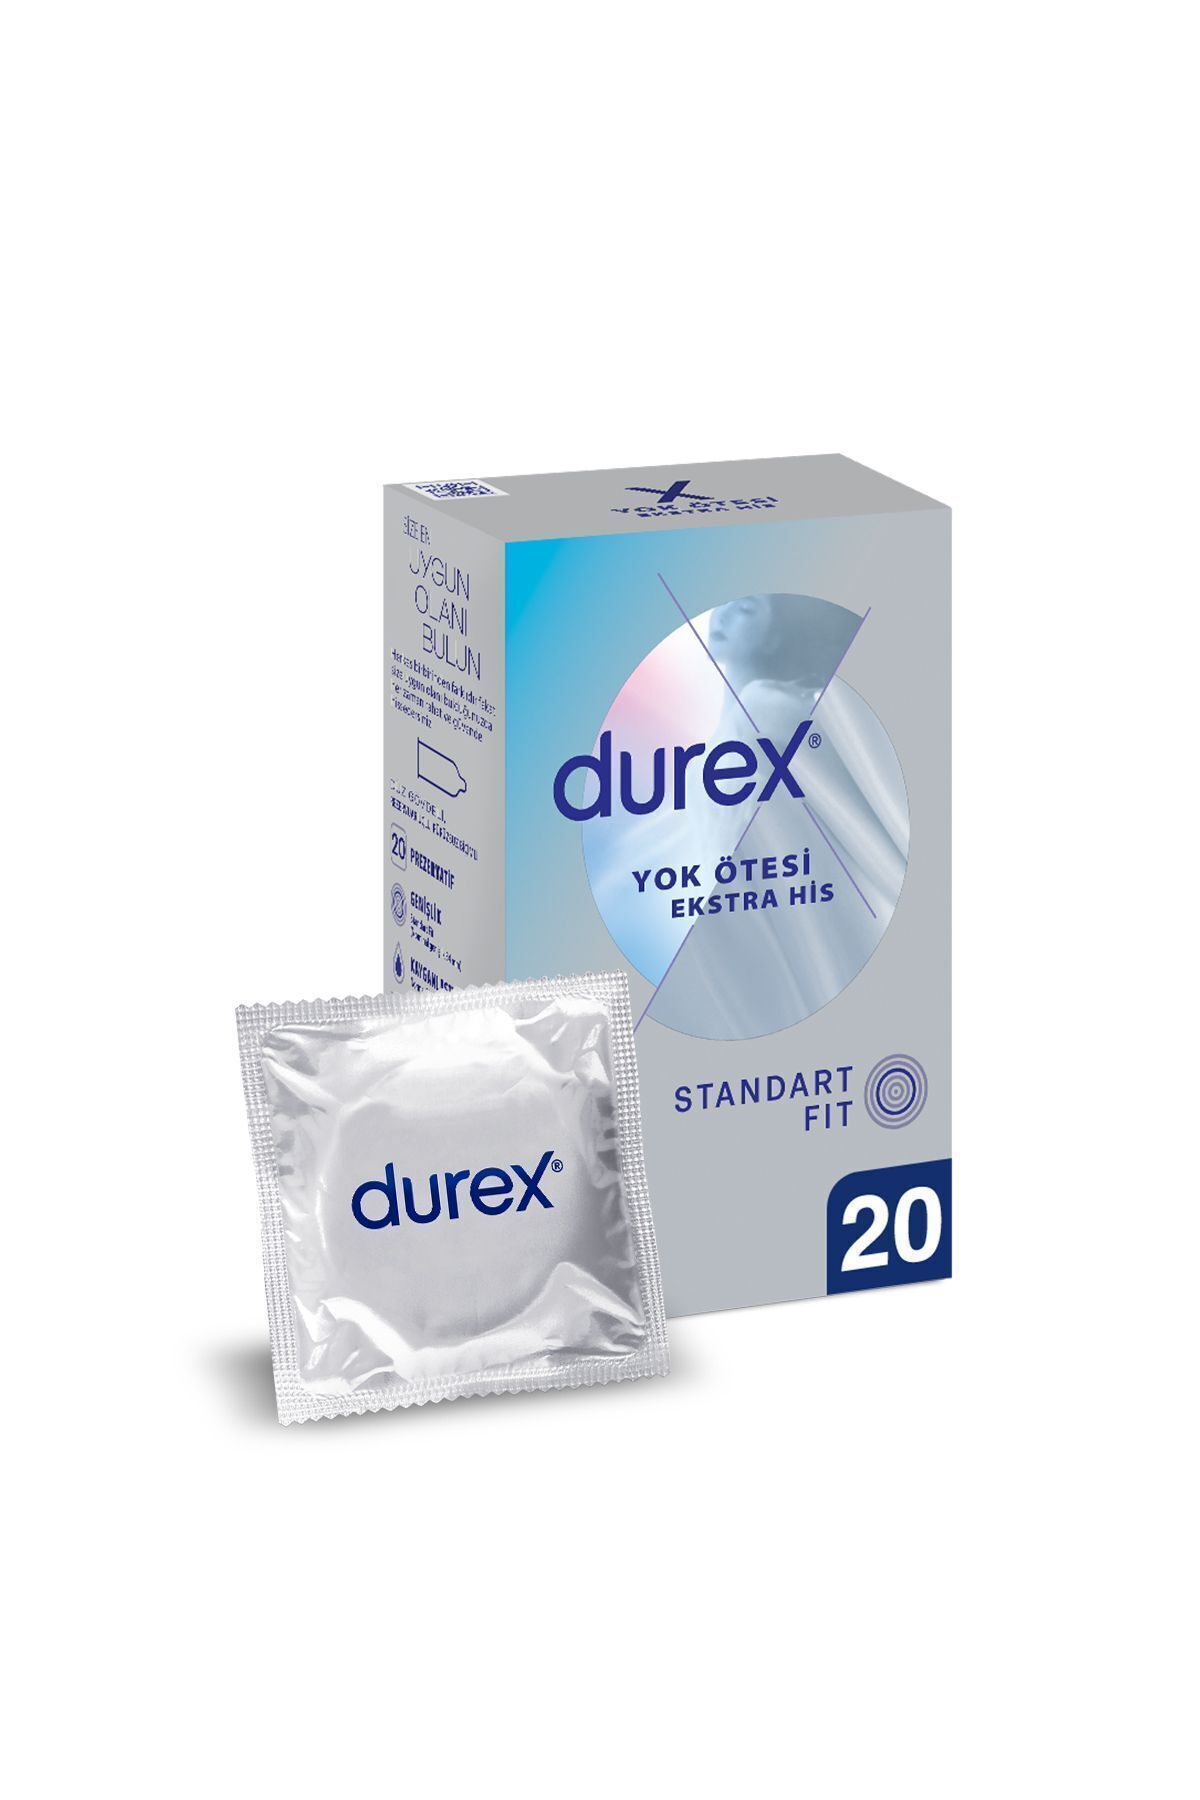 Durex Yok Ötesi Ekstra His 20'li İnce Prezervatif Avantaj Paketi